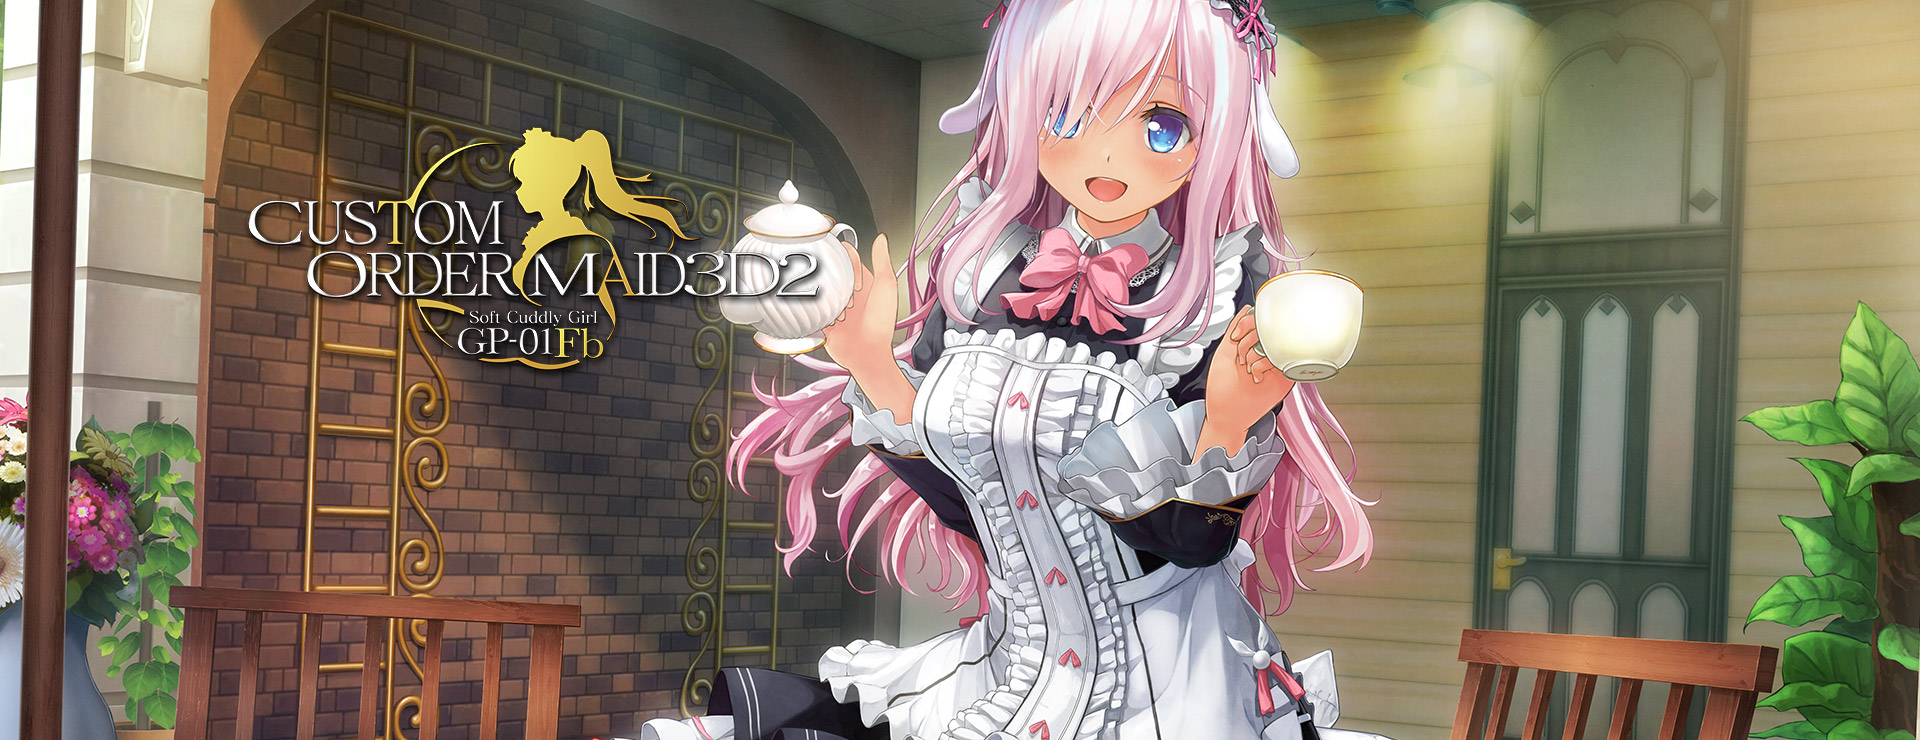 Custom Order Maid 3D 2: Soft Cuddly Girl GP-01Fb - Simulation Spiel